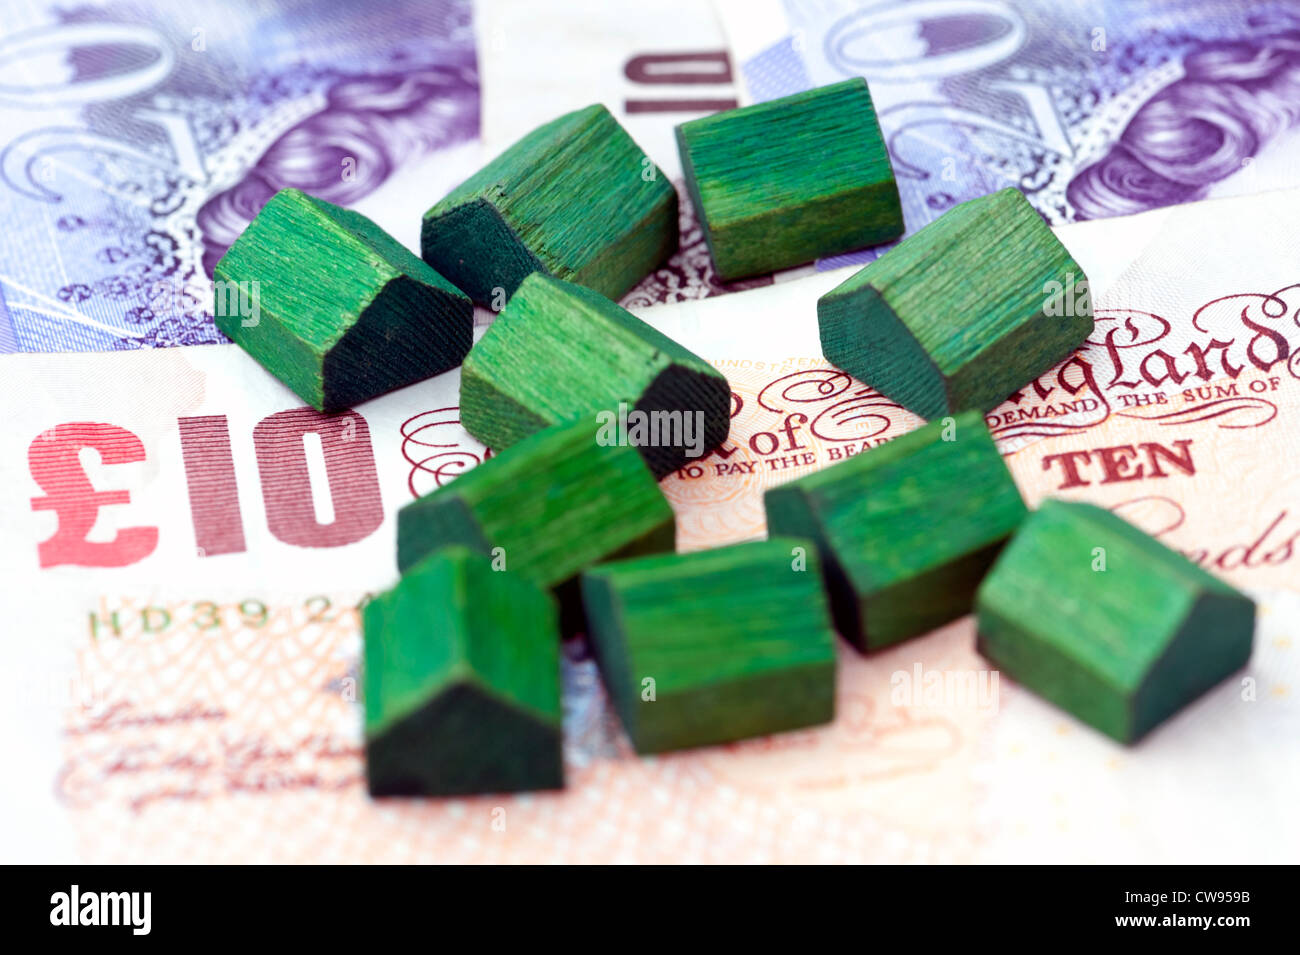 Spielzeug Häuser sitzen auf Pfund-Noten, die Immobilienpreise oder Finanzdienstleistungen im Zusammenhang mit dem Wohnungsmarkt darstellen. Stockfoto